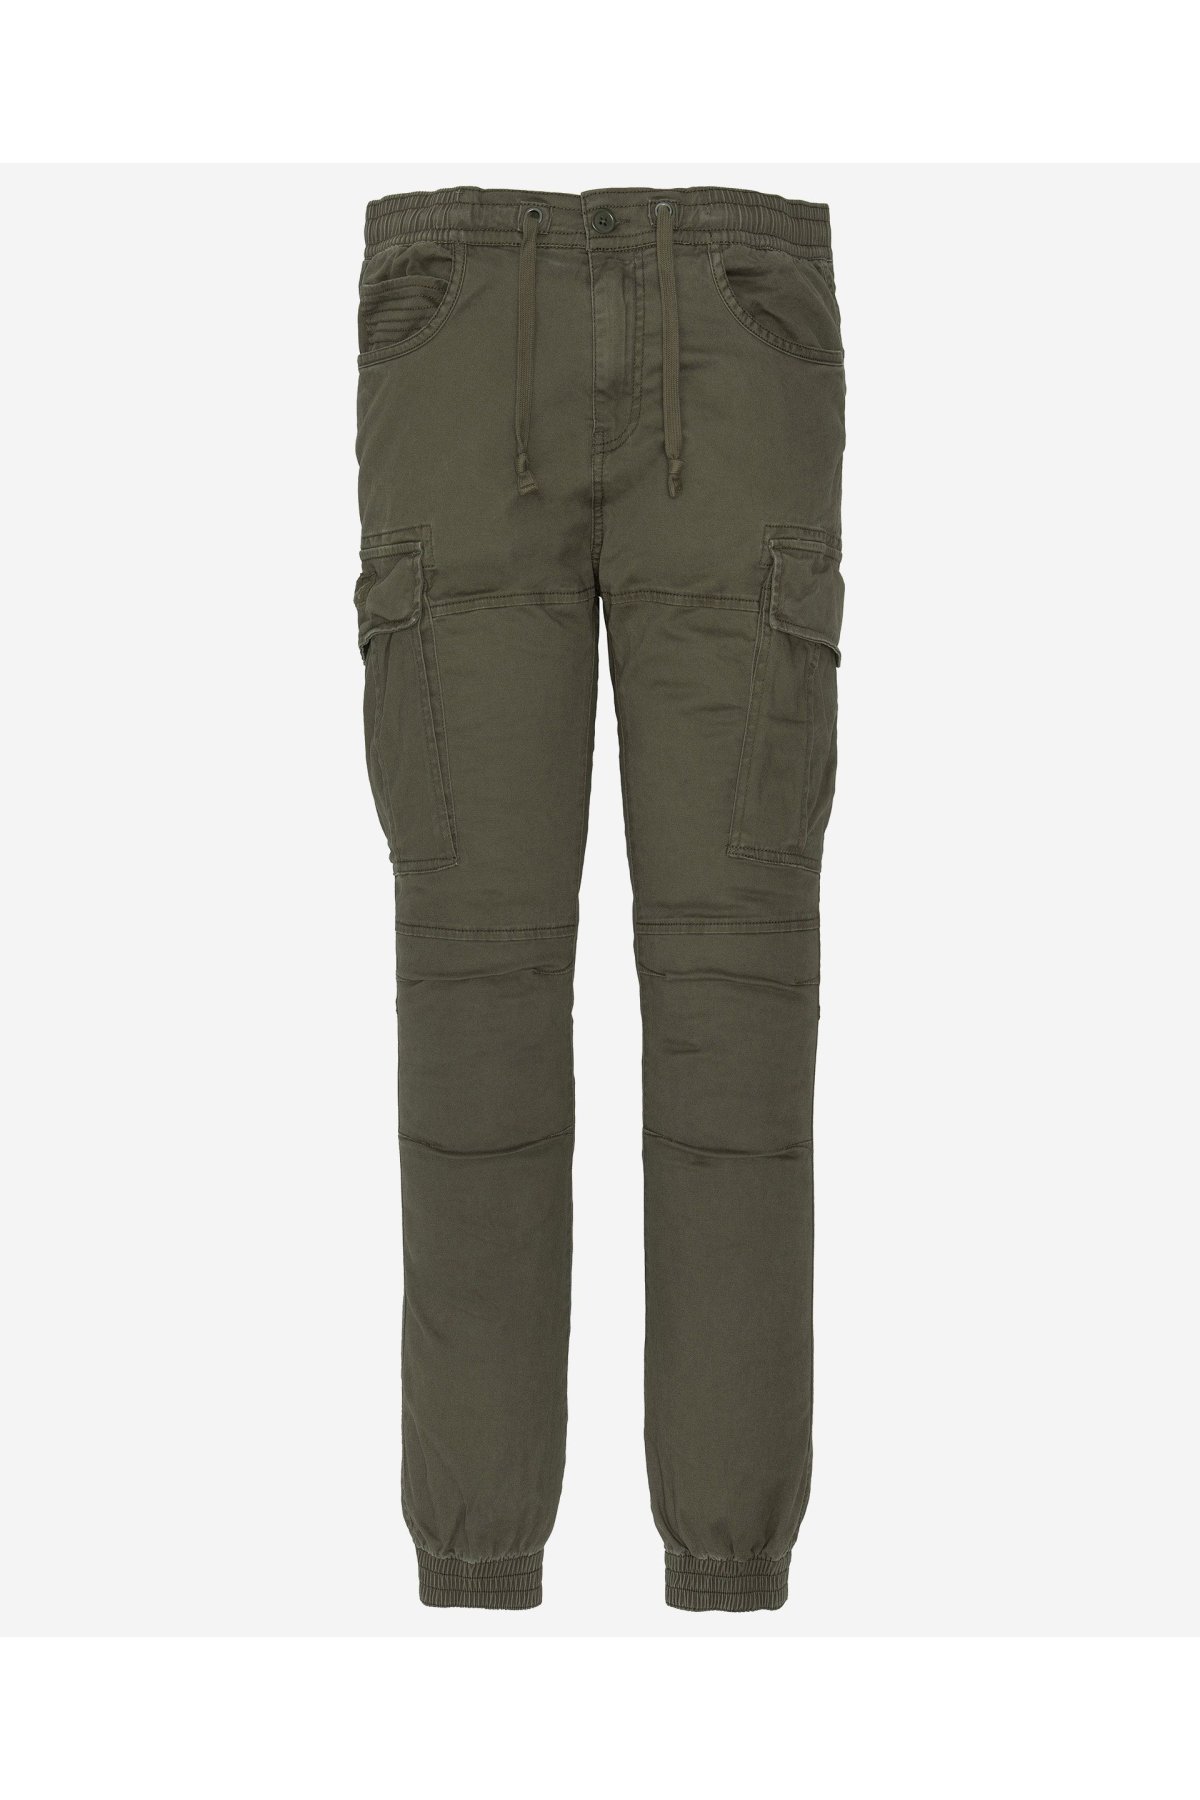 Schott NYC TRRELAX70 kalhoty zelené